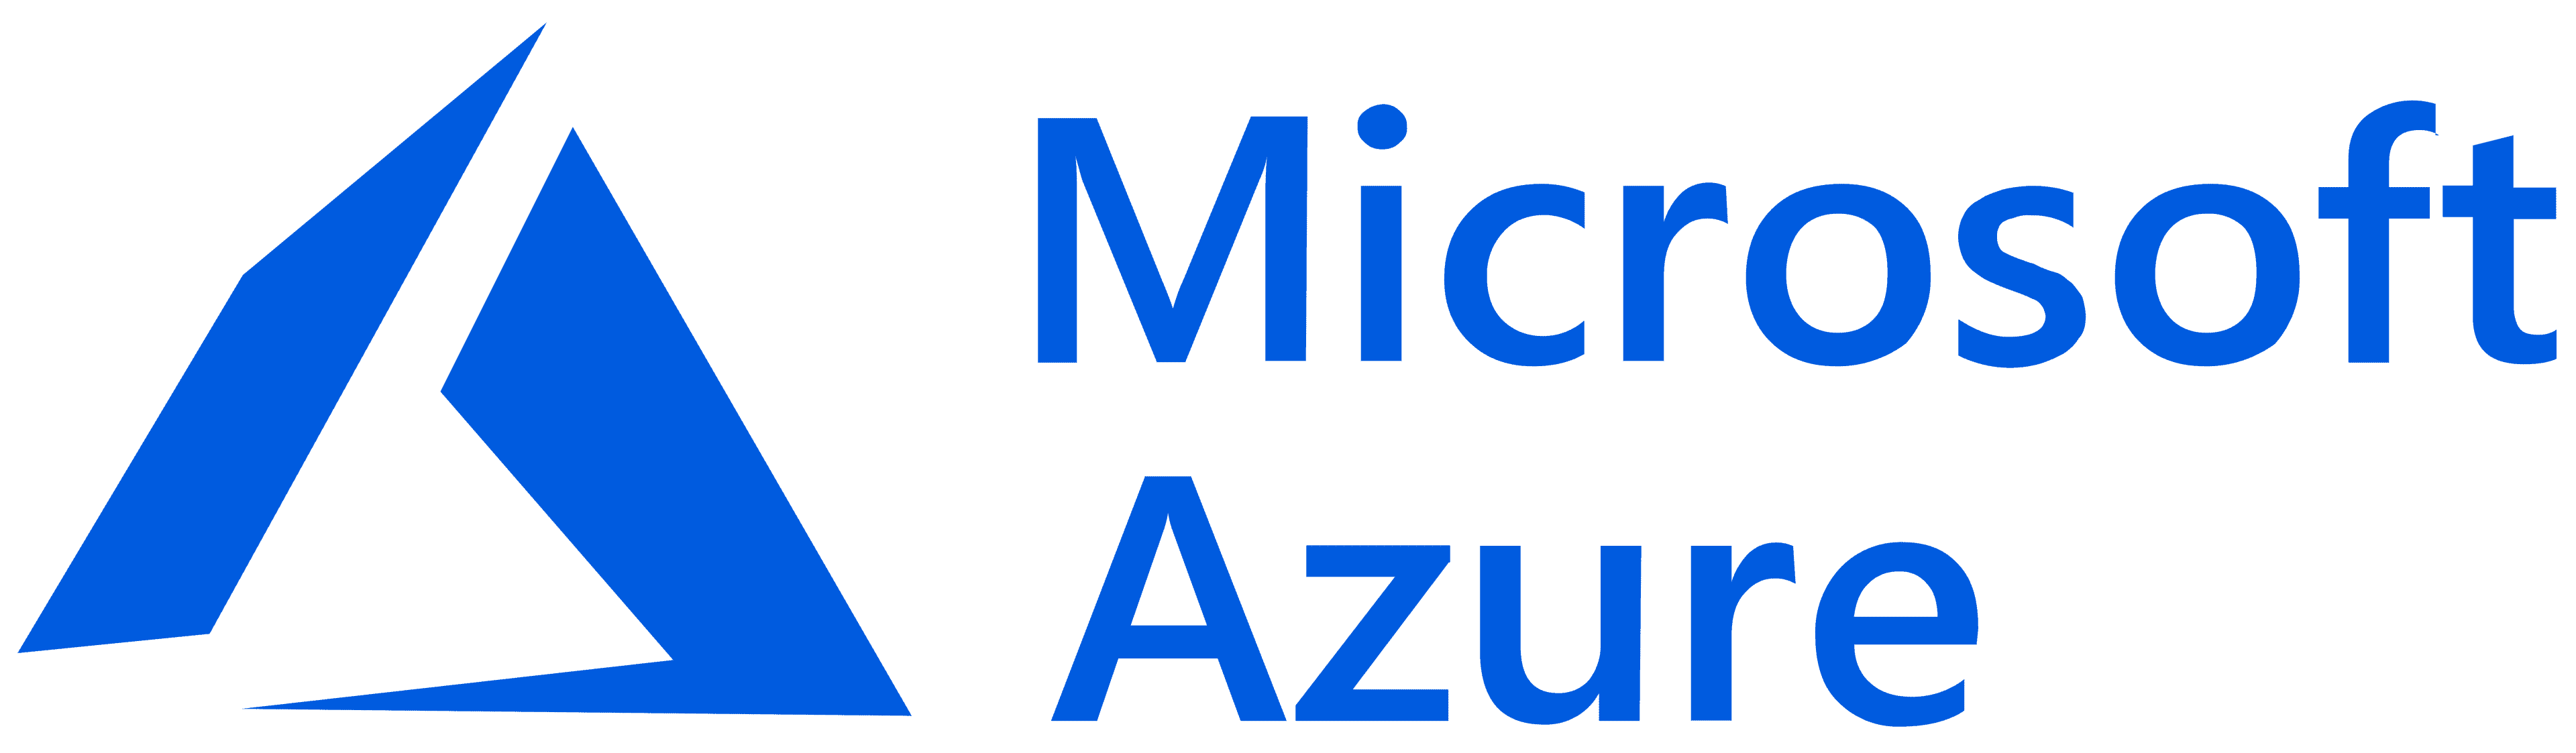 MicrosoftAzureLogo